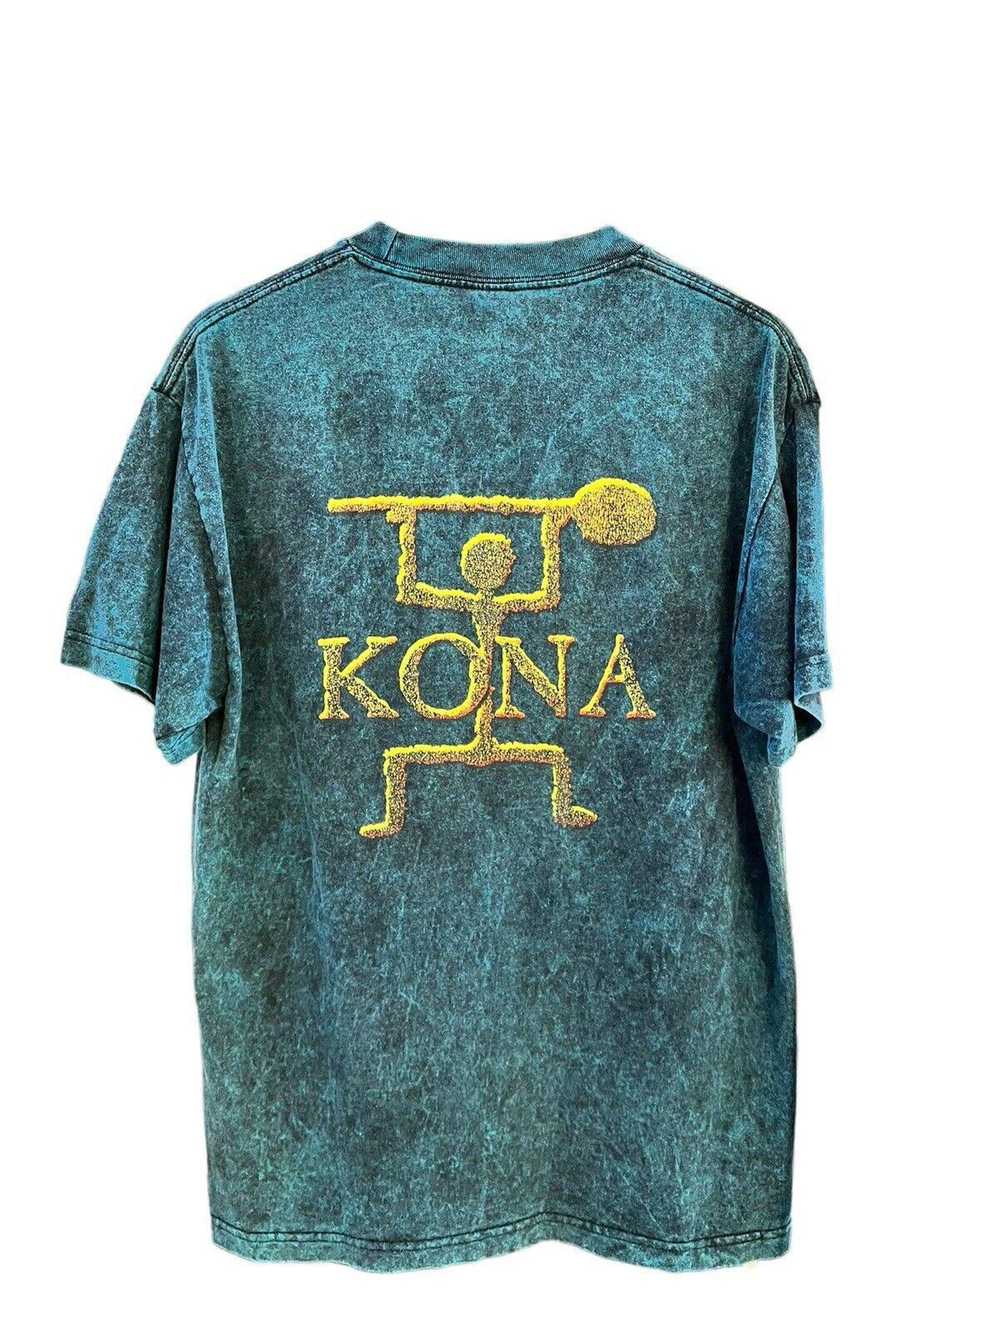 Vintage Vintage Hawaii Kona T-shirt Large - image 2